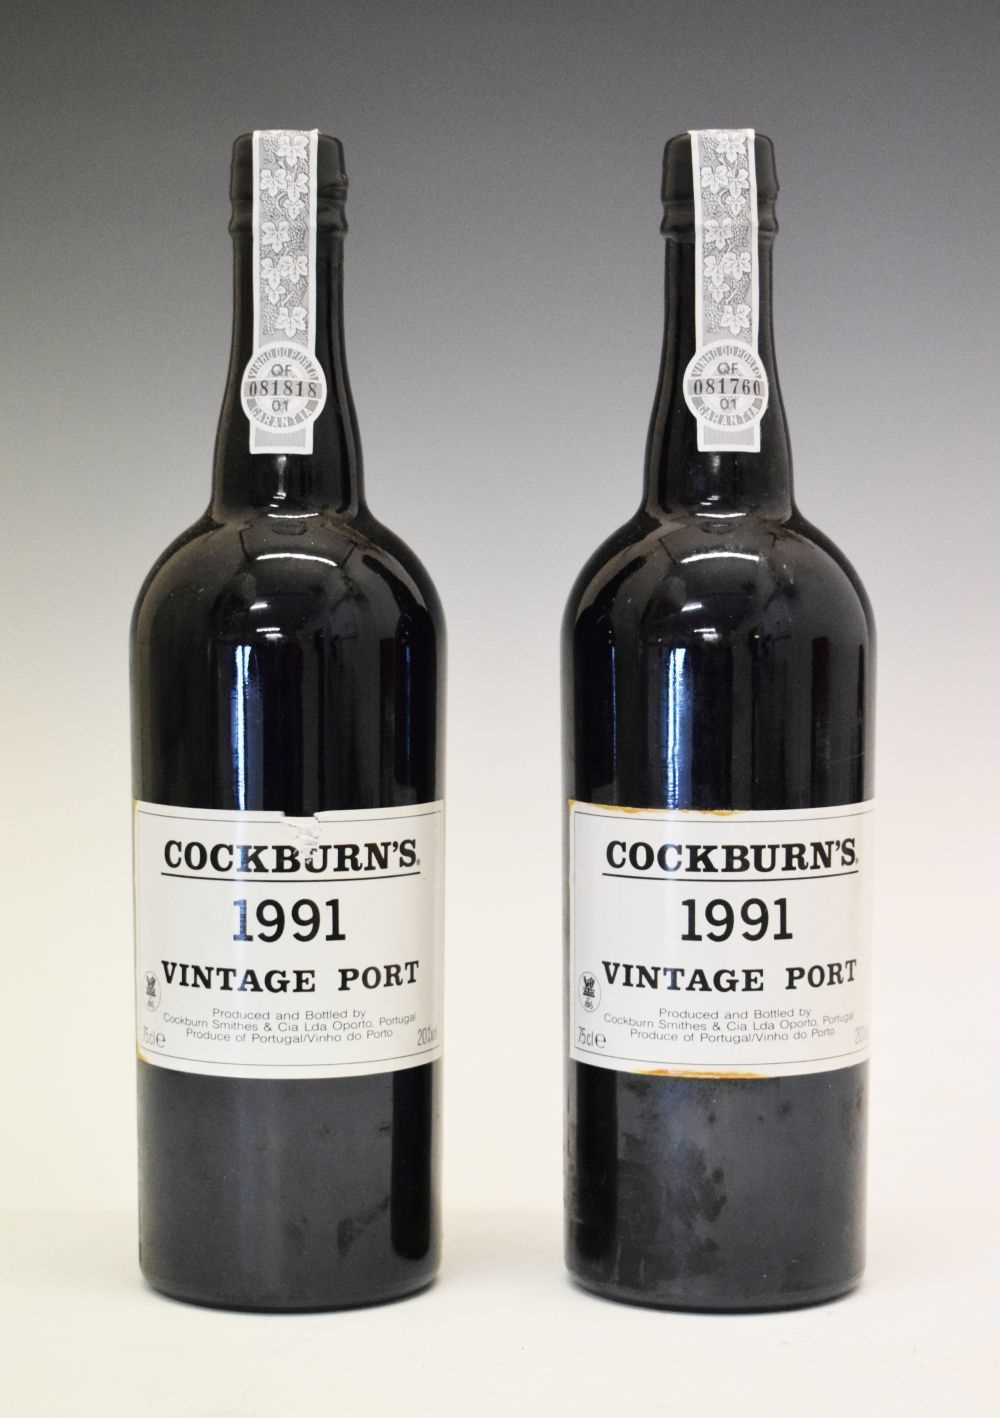 Two bottles of Cockburn's Vintage Port, 1991